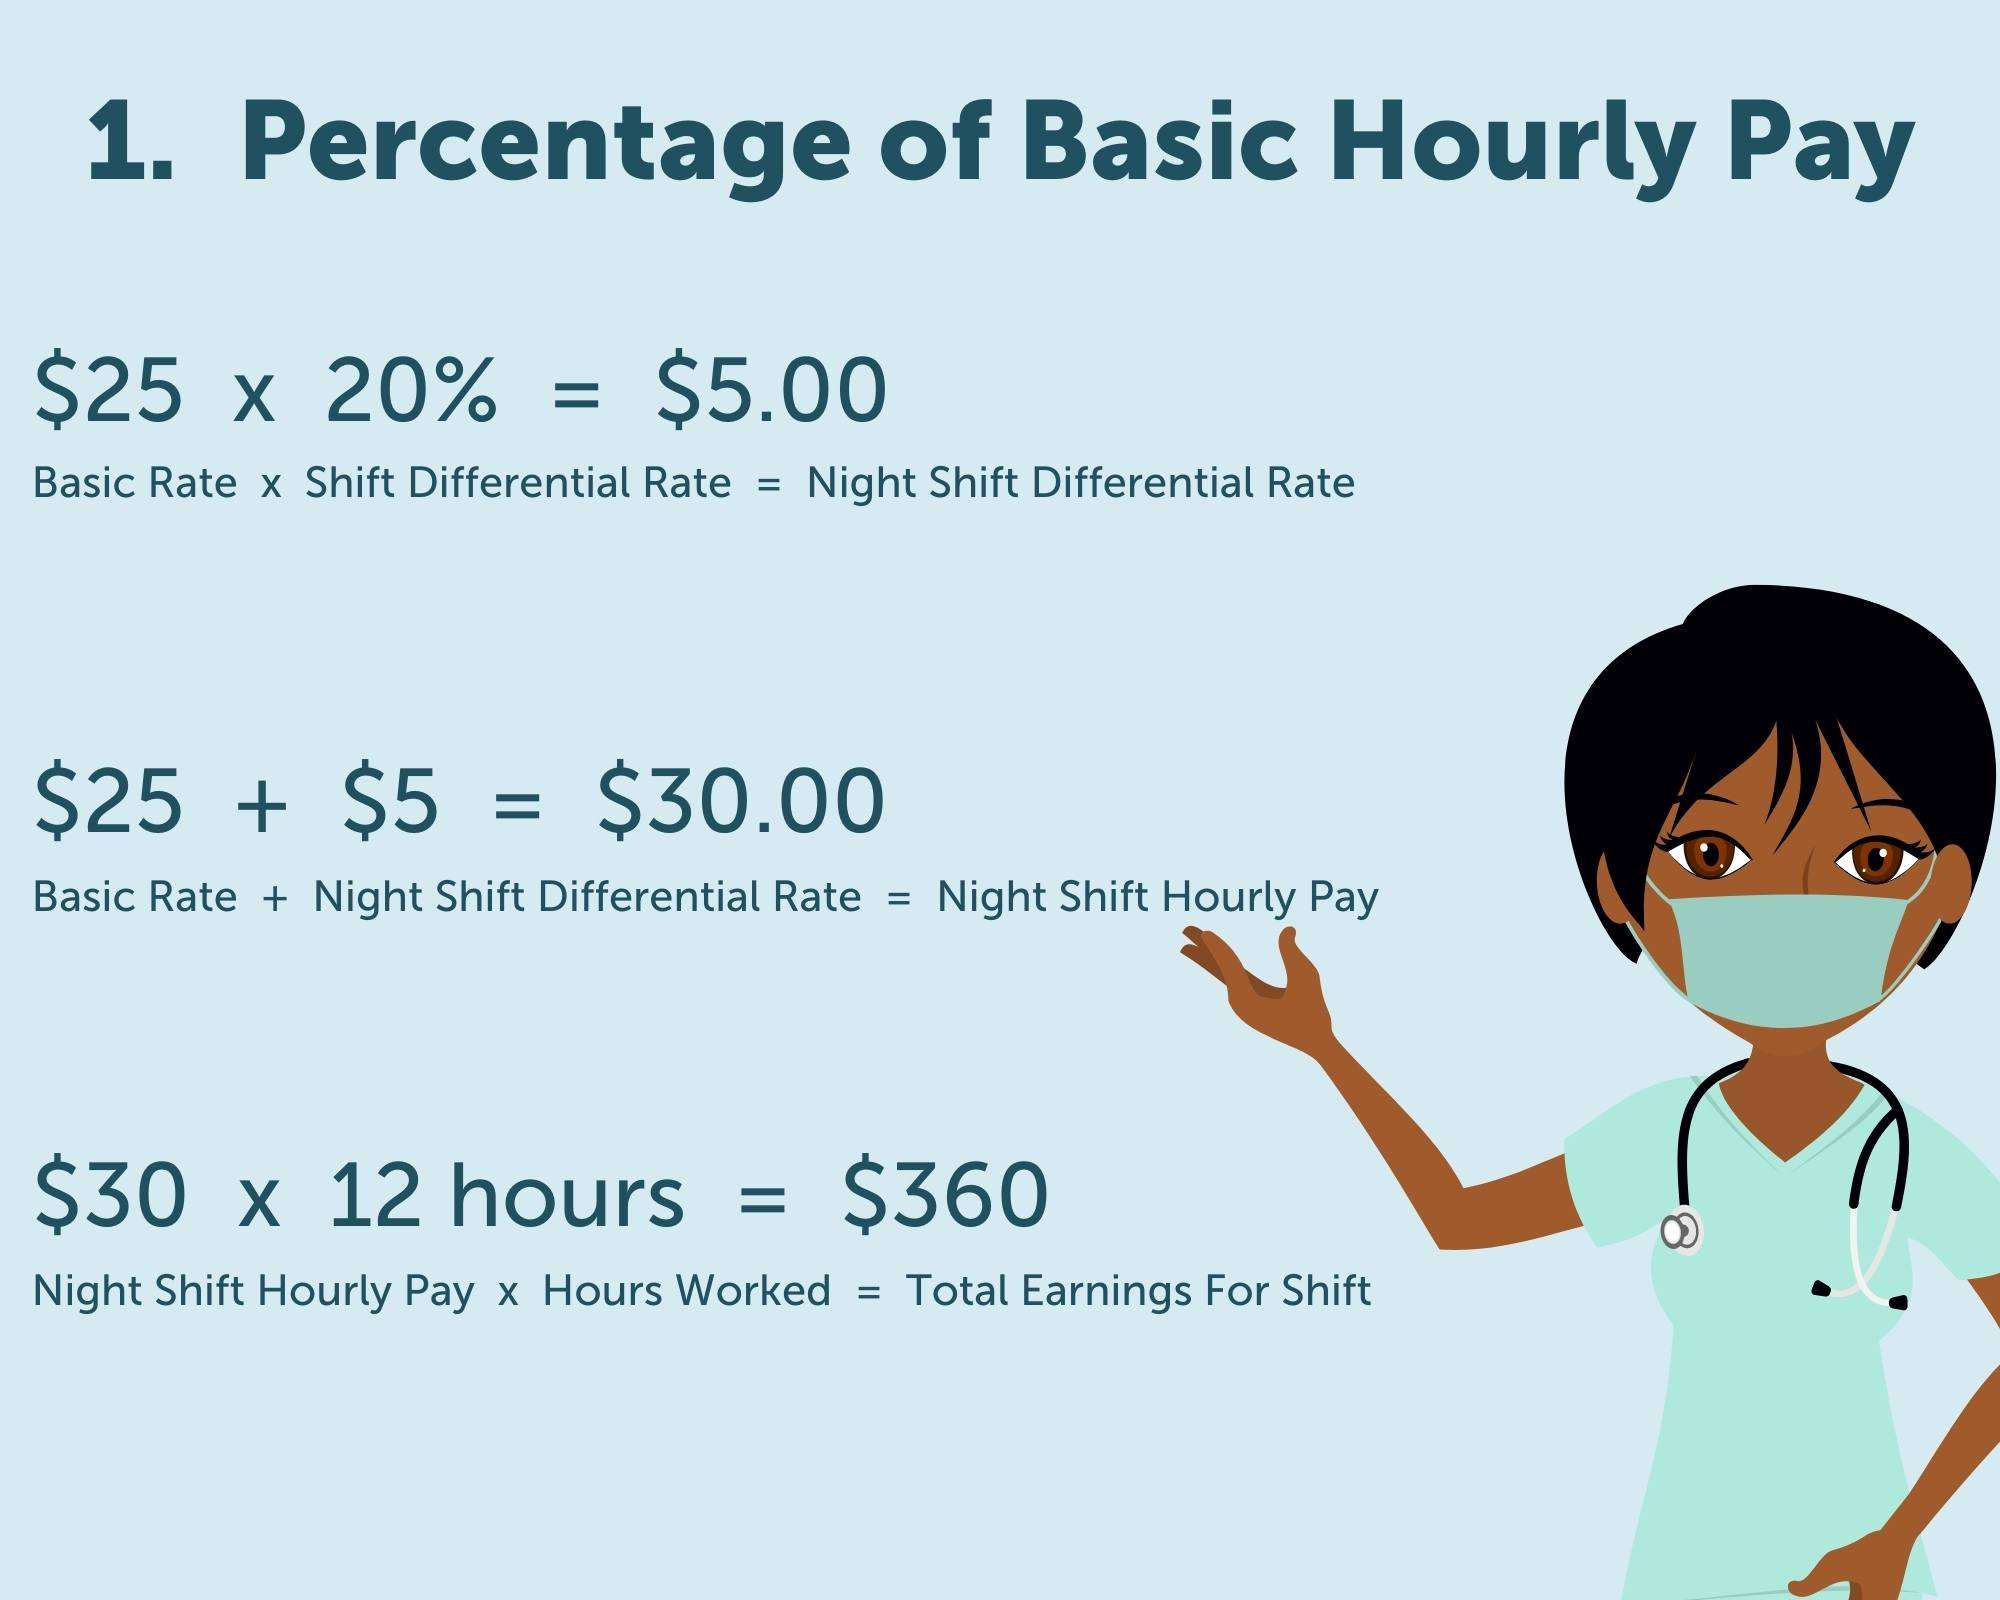 Percentage of Basic Hourly Pay